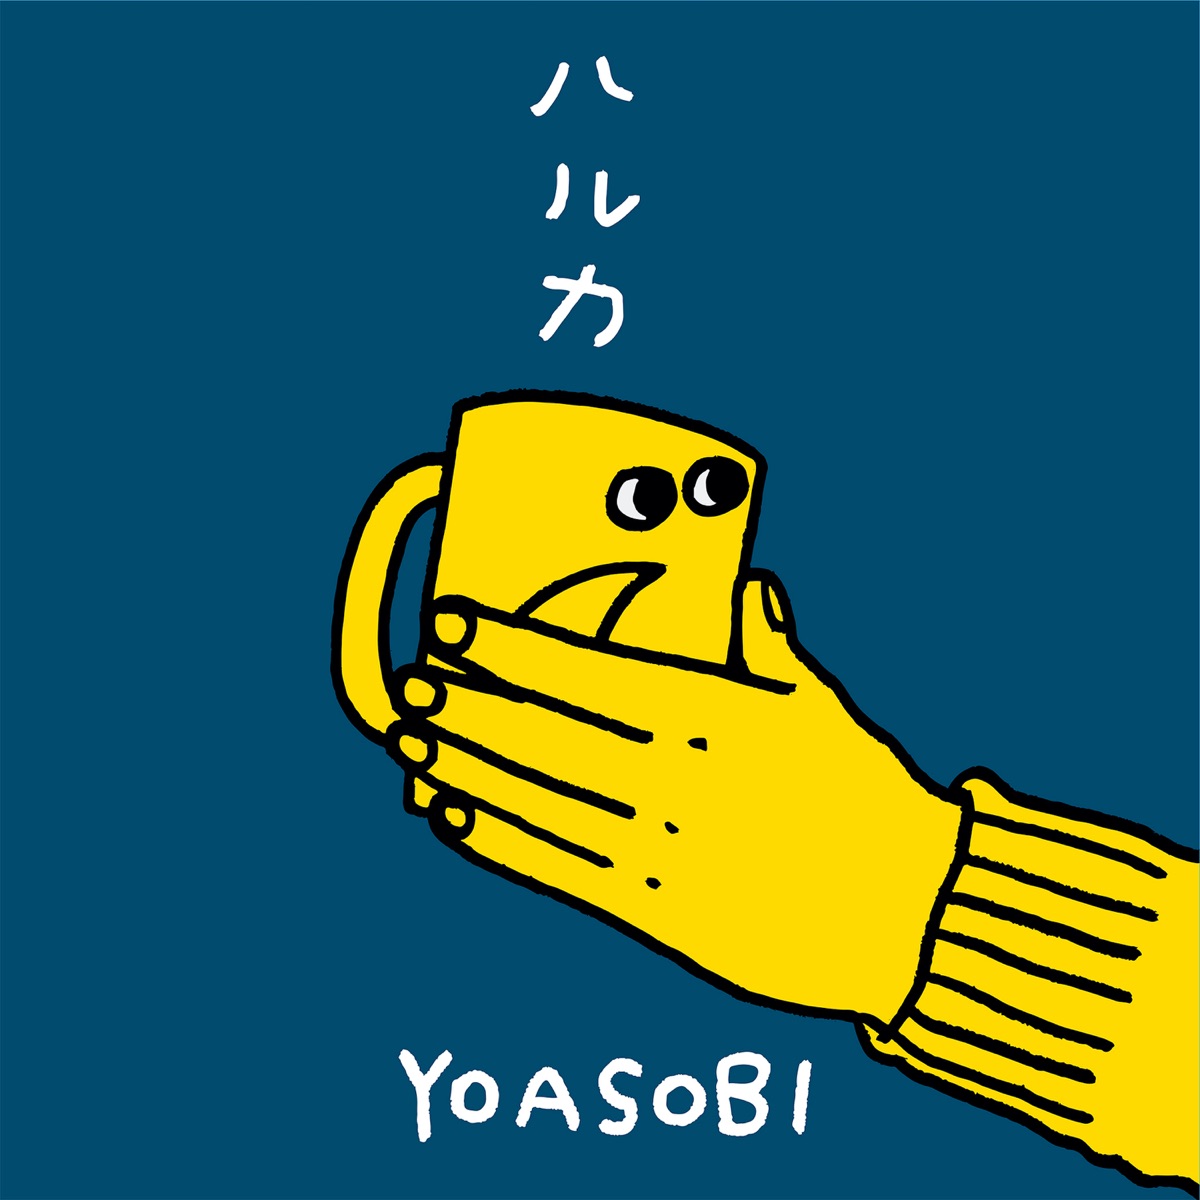 Cover for『YOASOBI - Haruka』from the release『Haruka』